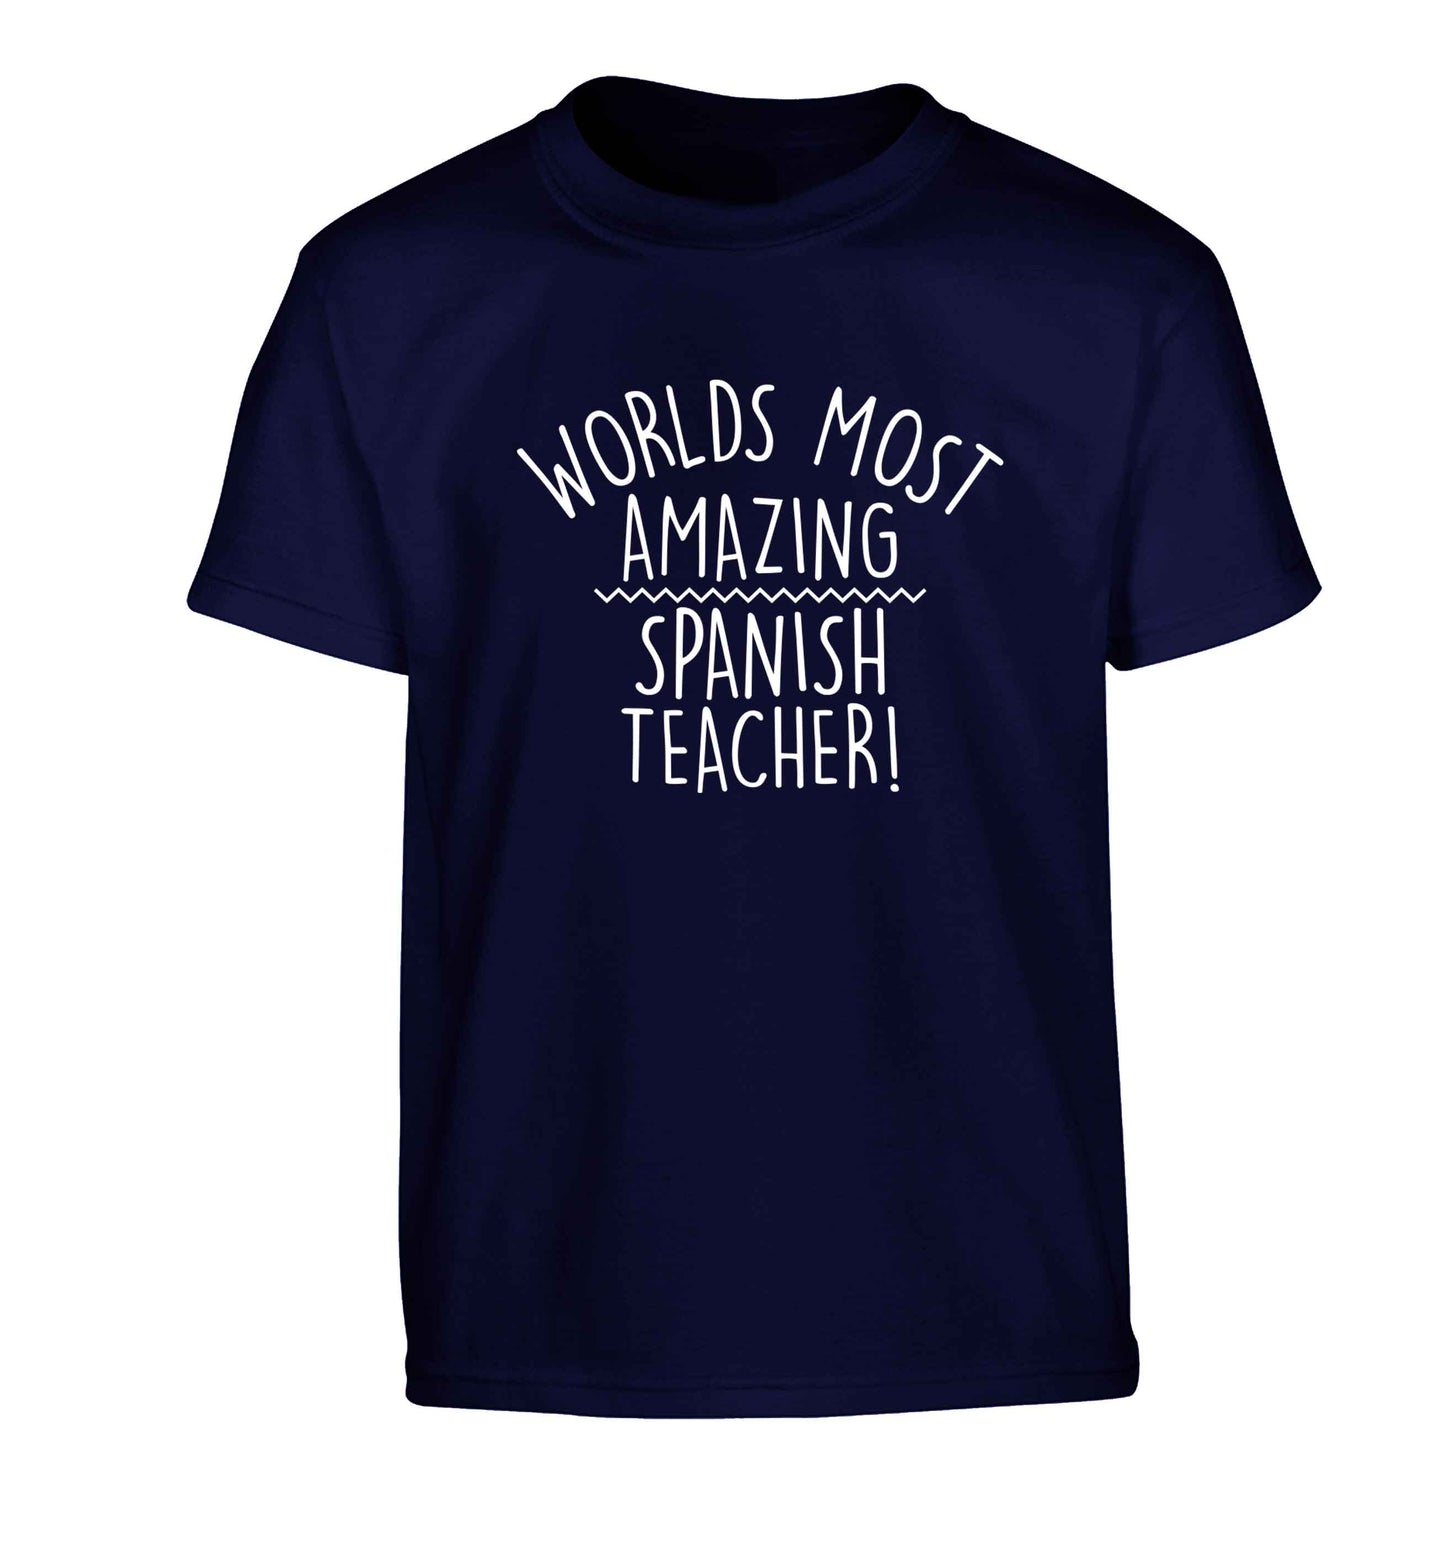 Worlds most amazing Spanish teacher Children's navy Tshirt 12-13 Years